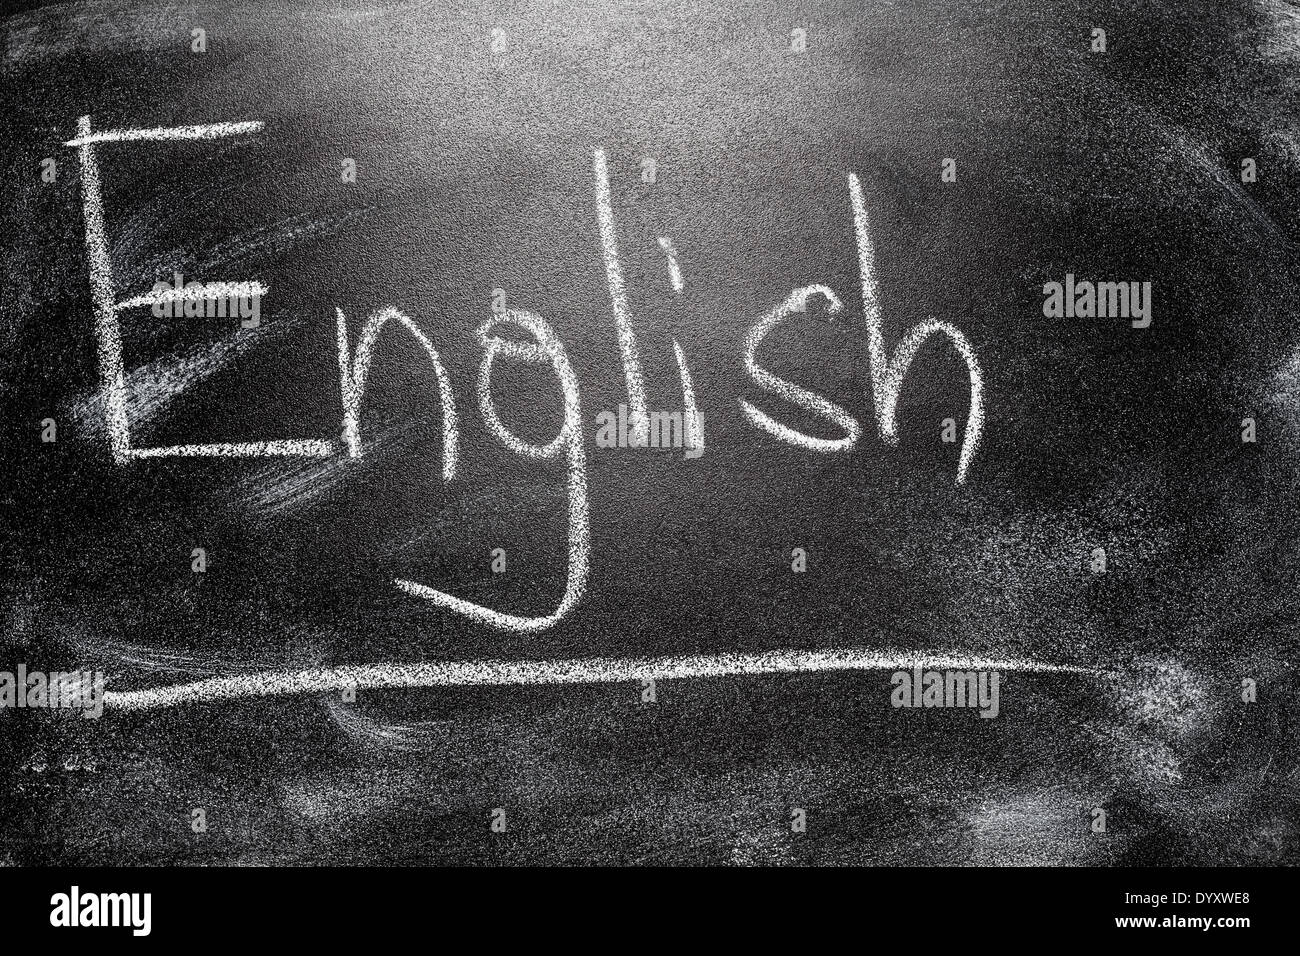 Apprendimento del linguaggio - Inglese. Blackboard concetto di istruzione.  Messaggio scritto a mano su una lavagna di scuola scrivere in inglese Foto  stock - Alamy